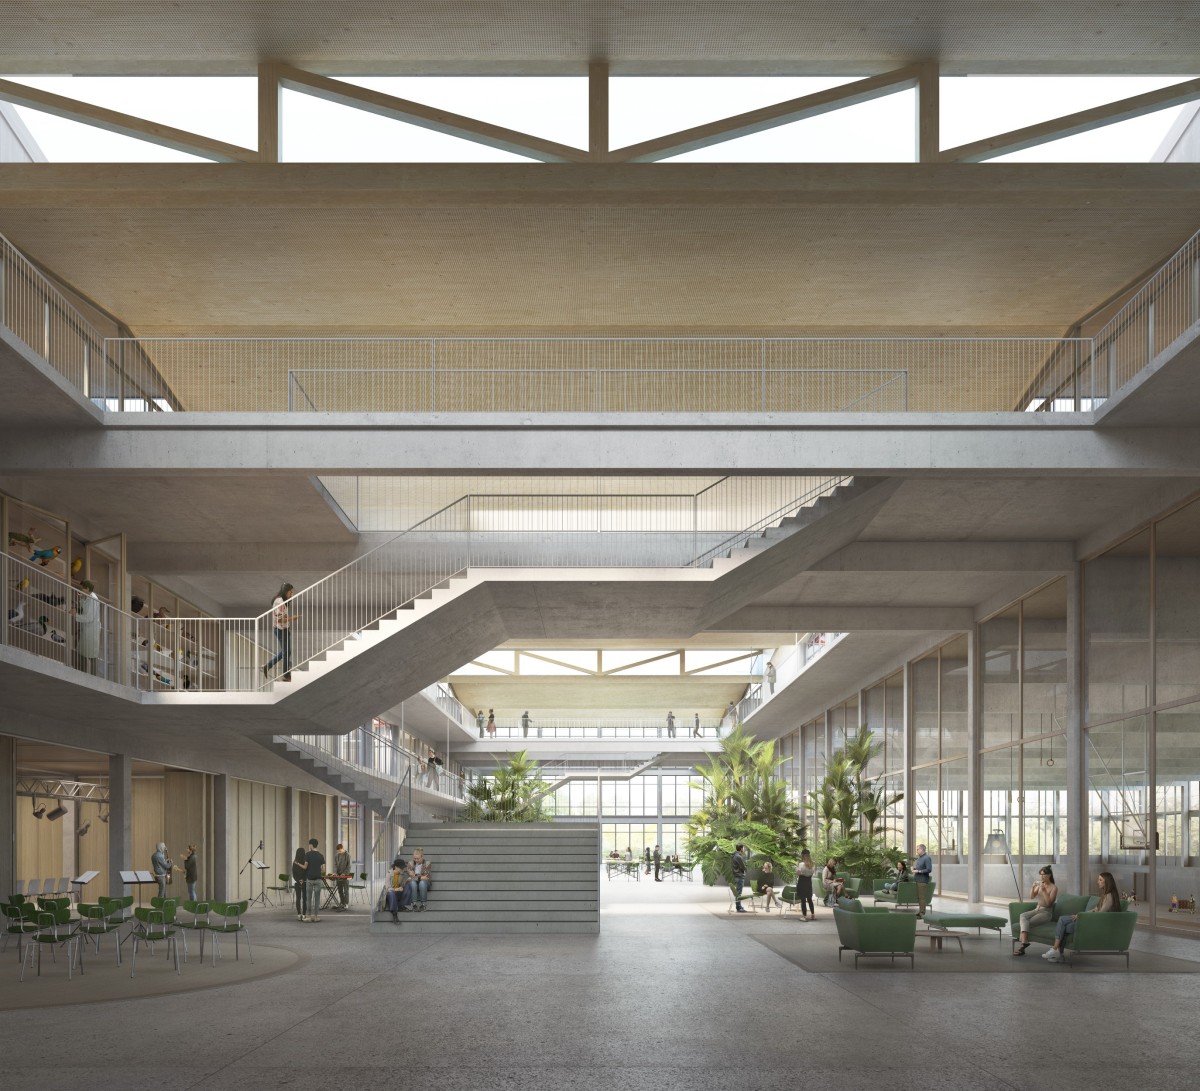 Eine zentrale Halle verbindet die sechs Gebäudeeinheiten zu einer clusterartigen Struktur und bildet ein vielseitig nutzbares Forum.